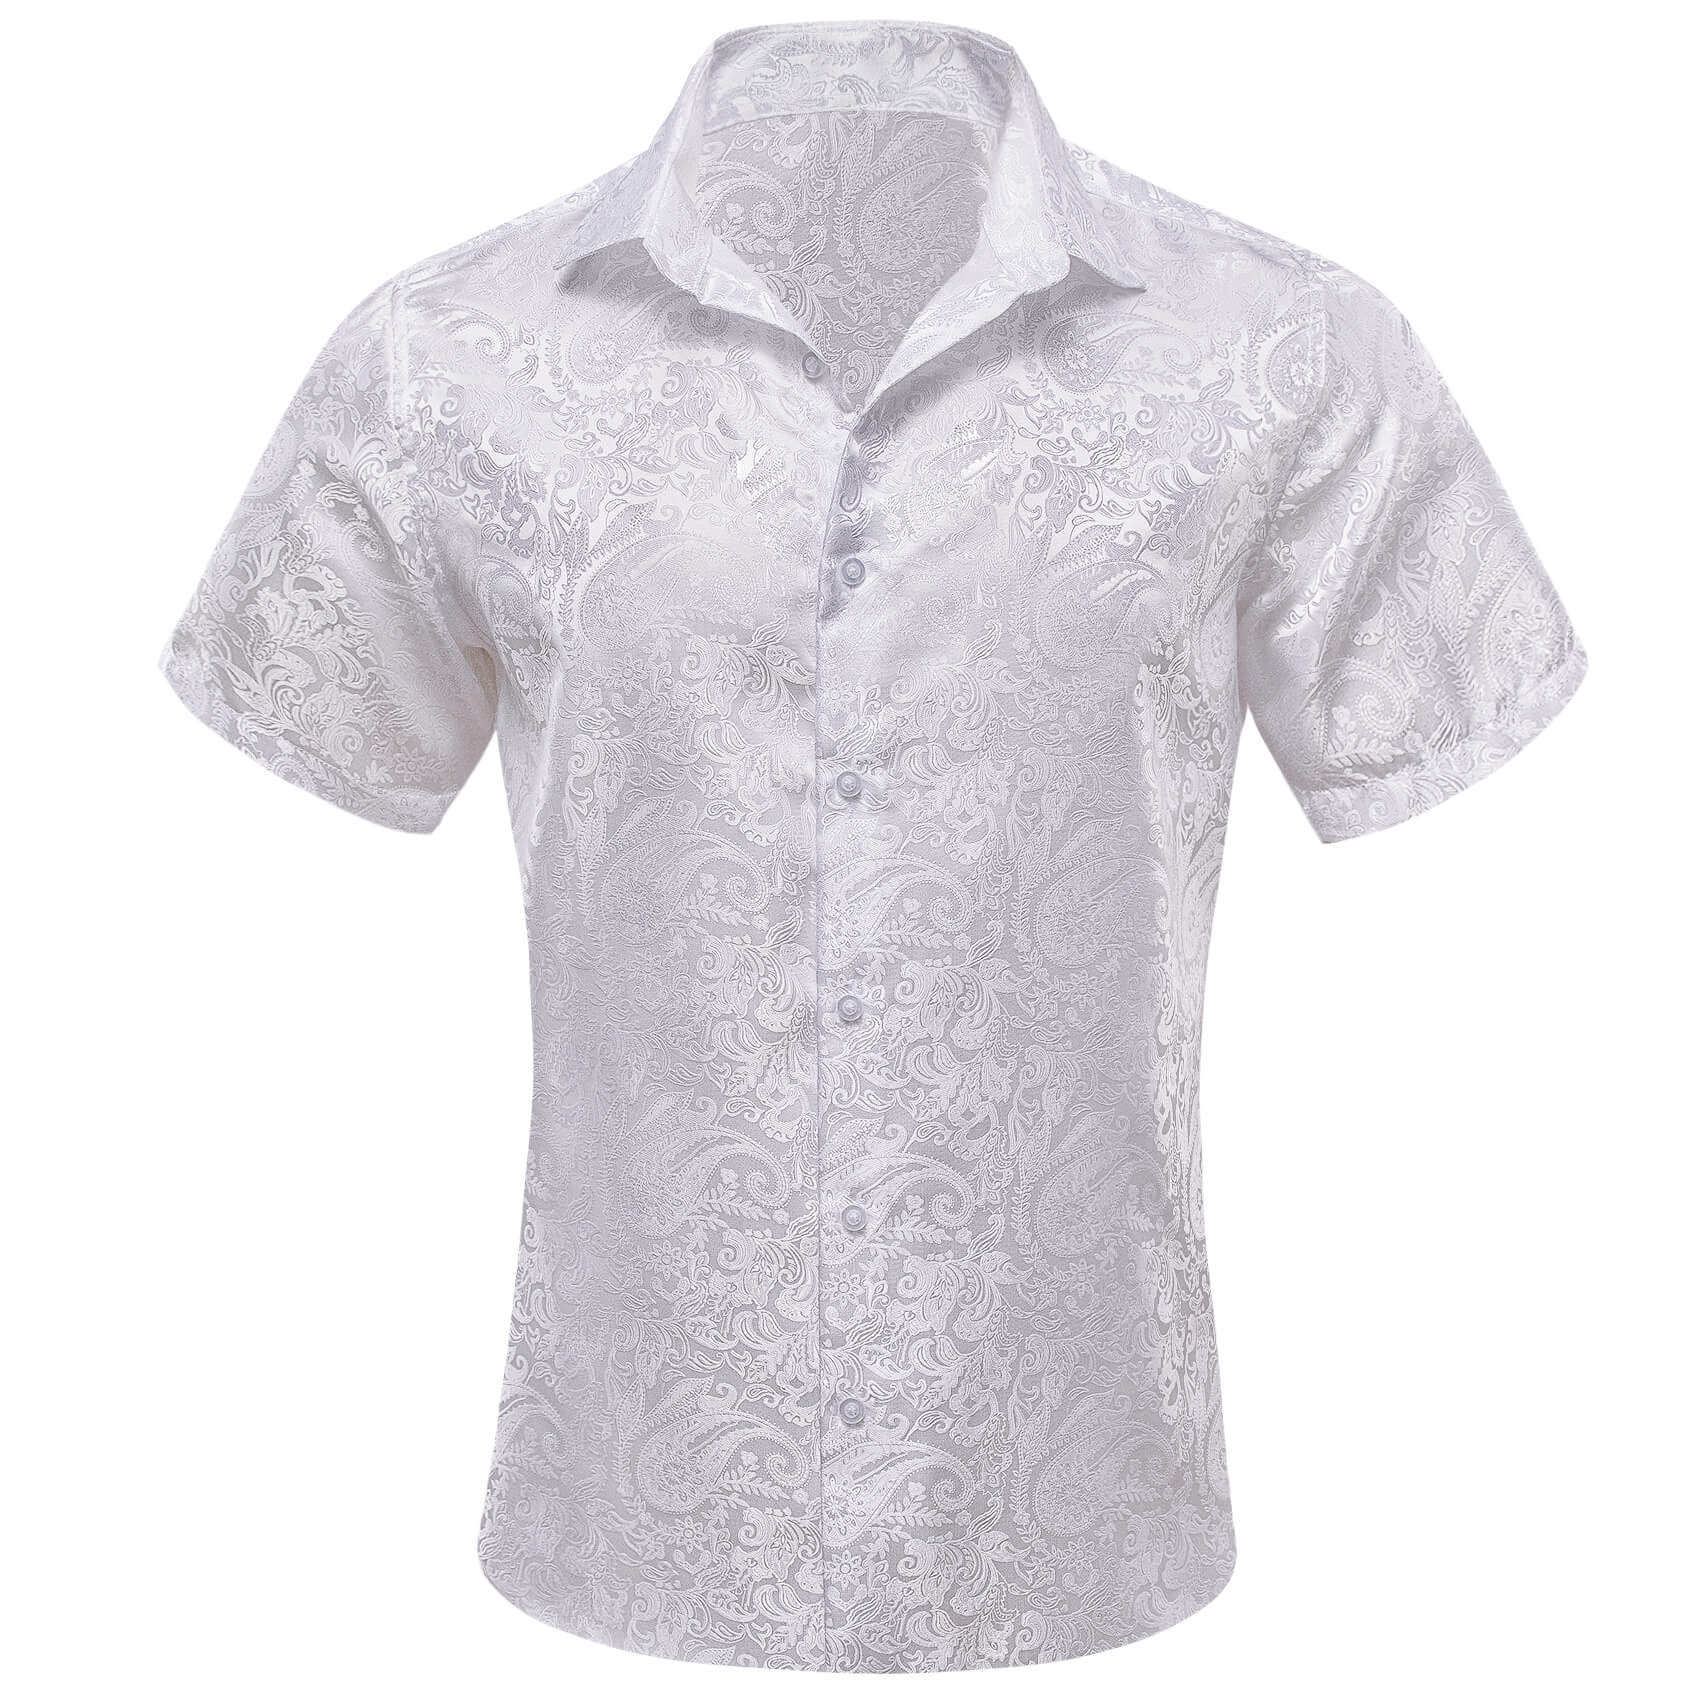  Short Sleeve Shirt Jacquard Paisley White Shirt